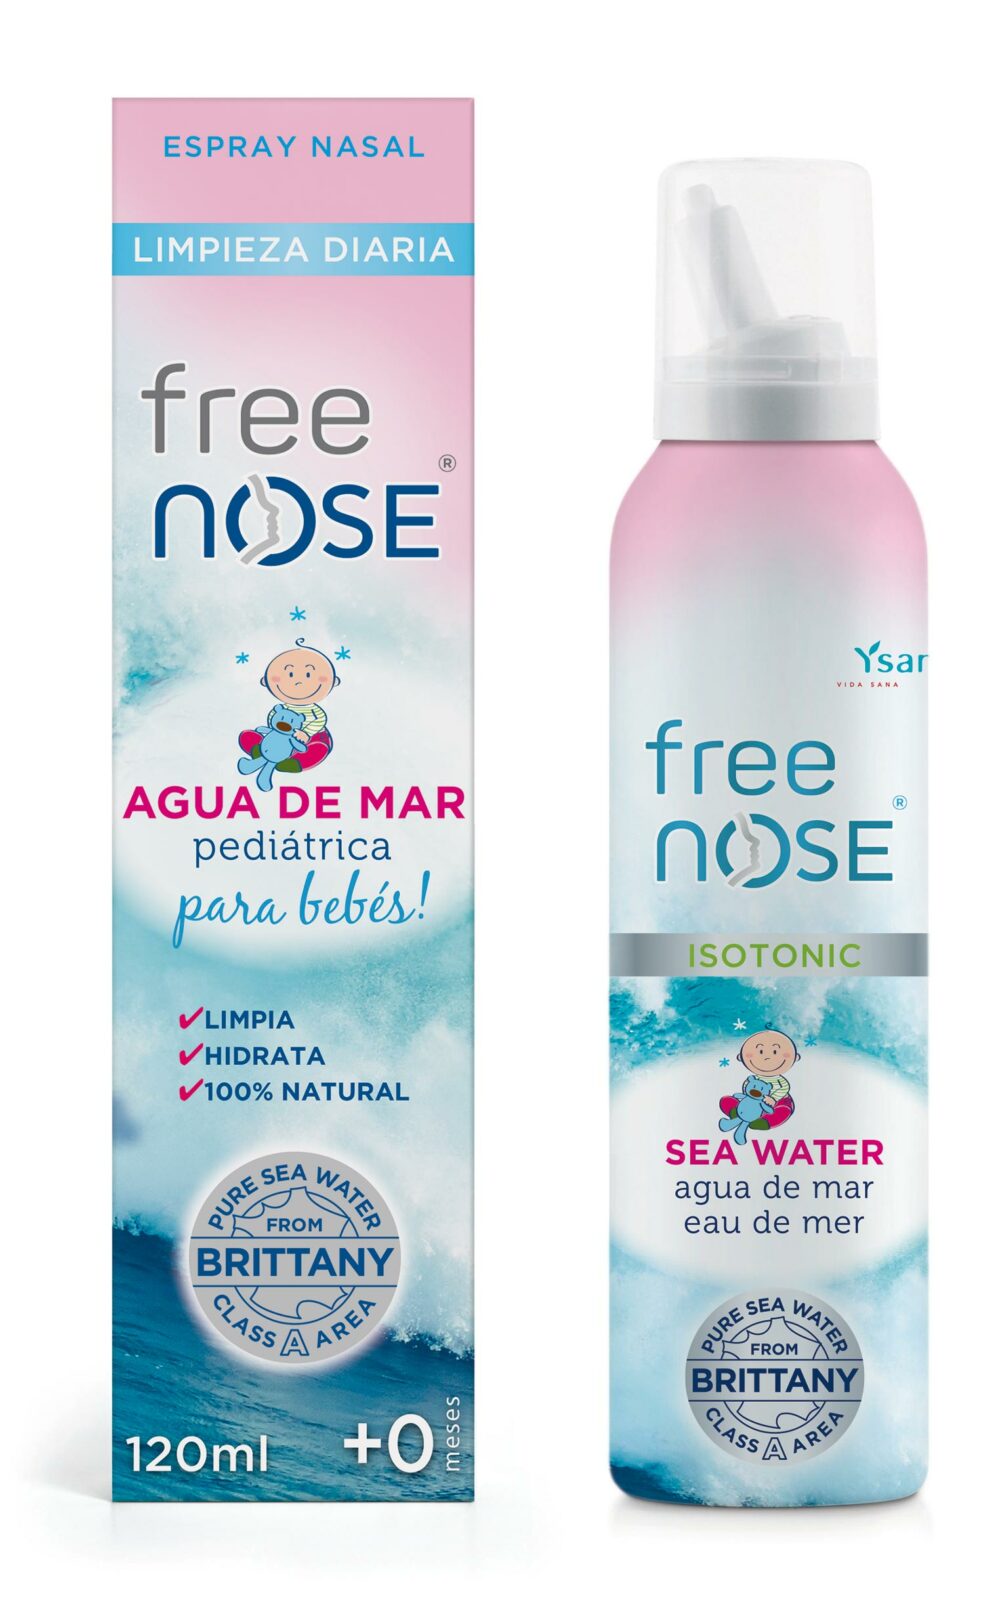 Free Nose® Agua de Mar Hipertónica Fuerza Fuerte espray nasal 120ml de  Ysana® Vida Sana